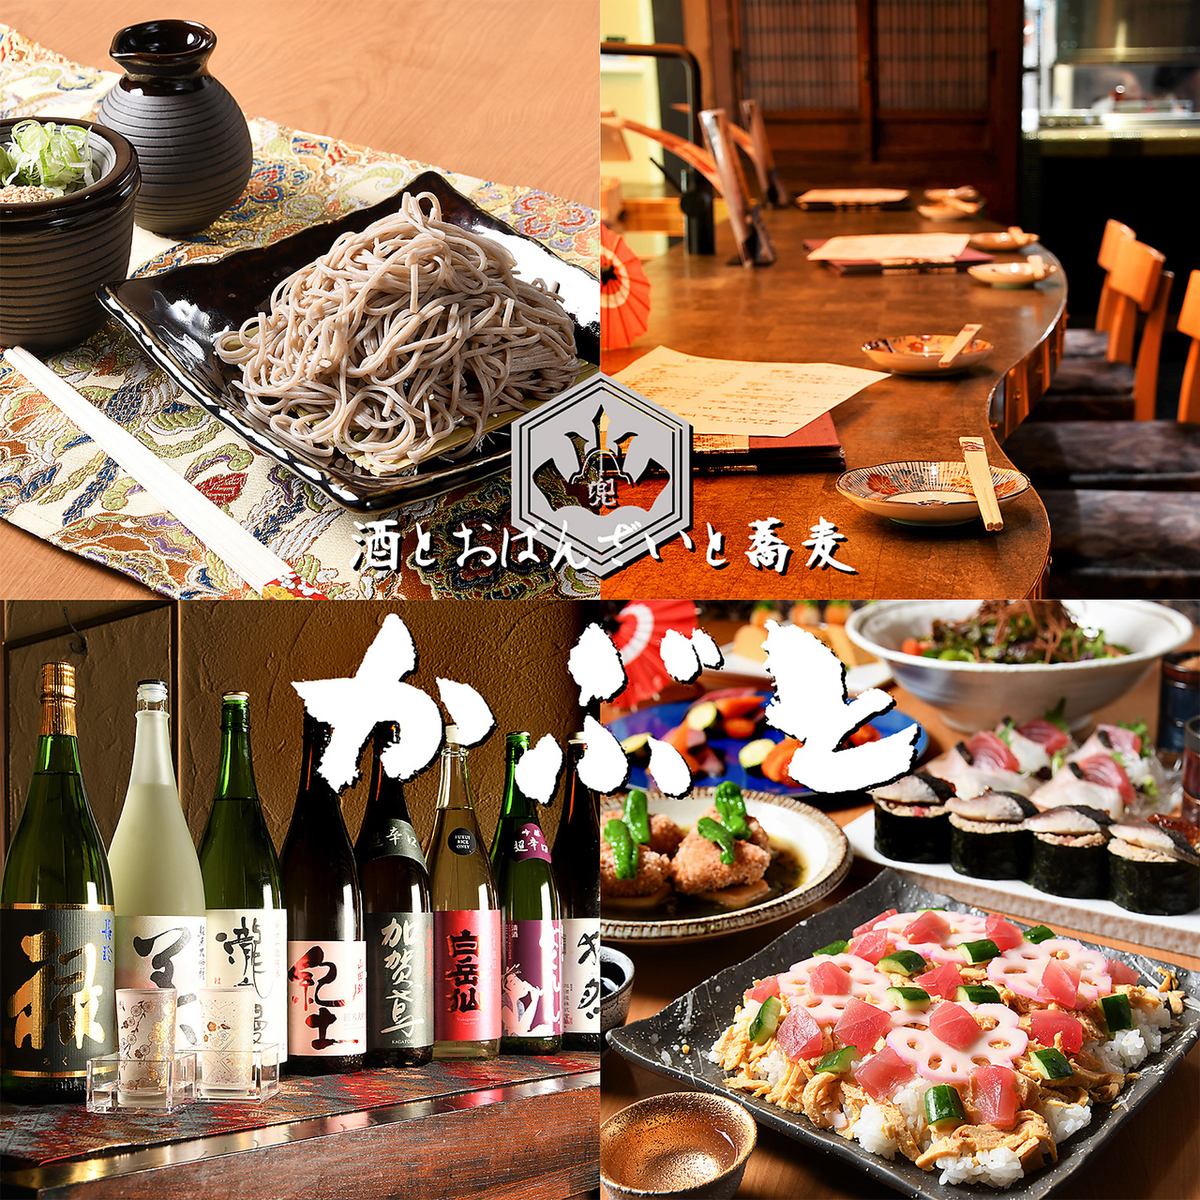 度過悠閒時光的休閒空間...請享用嚴選的日本酒、小菜、家常菜、蕎麥麵。